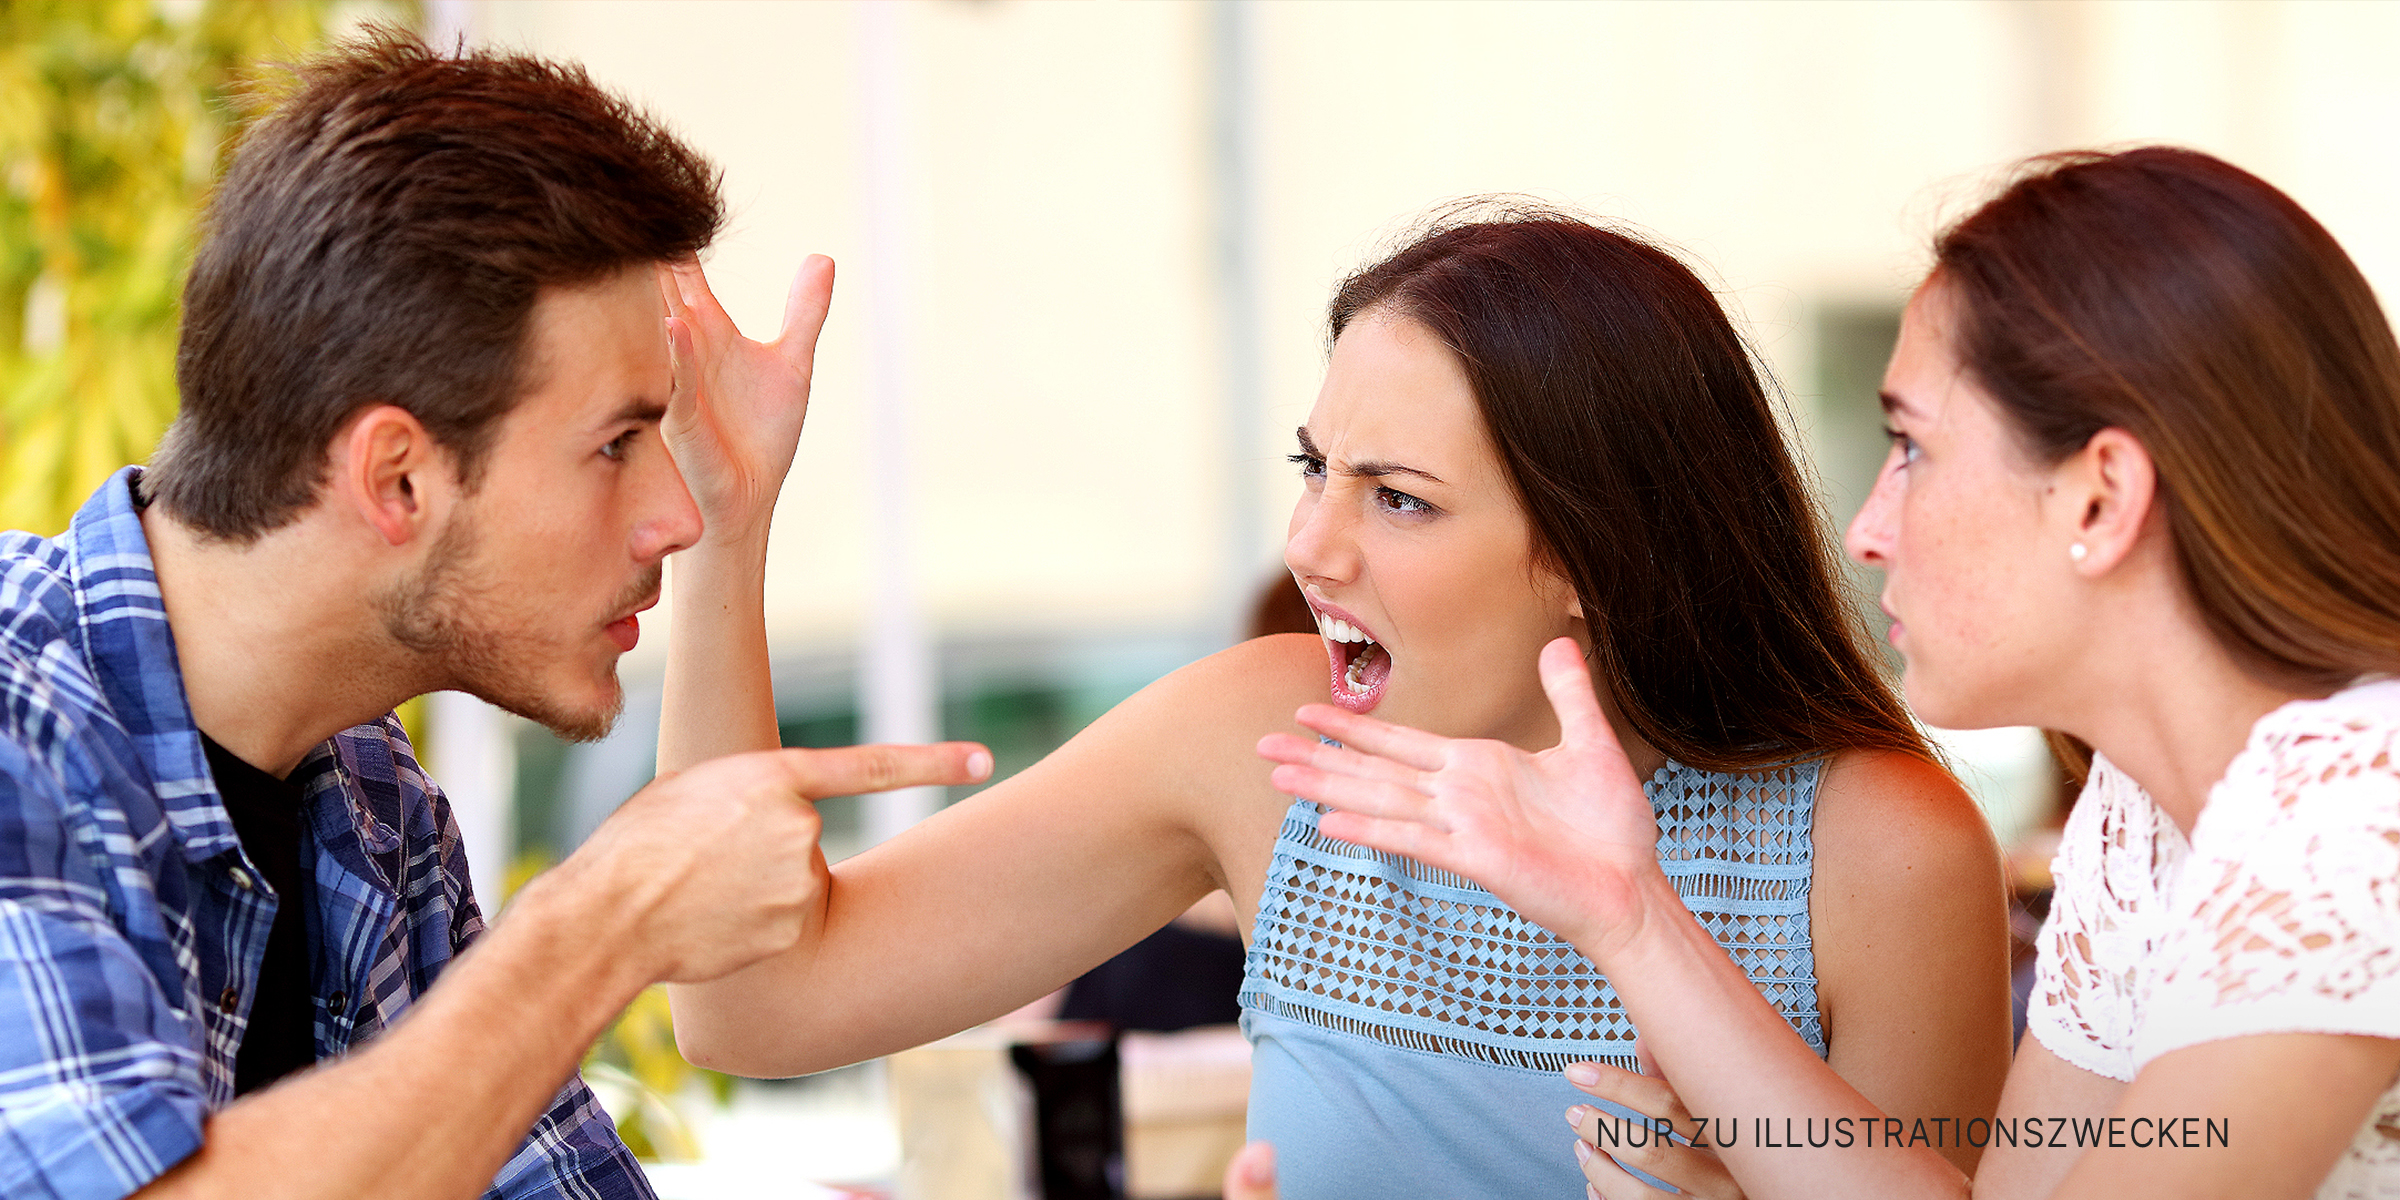 Menschen, die sich streiten | Quelle: Shutterstock